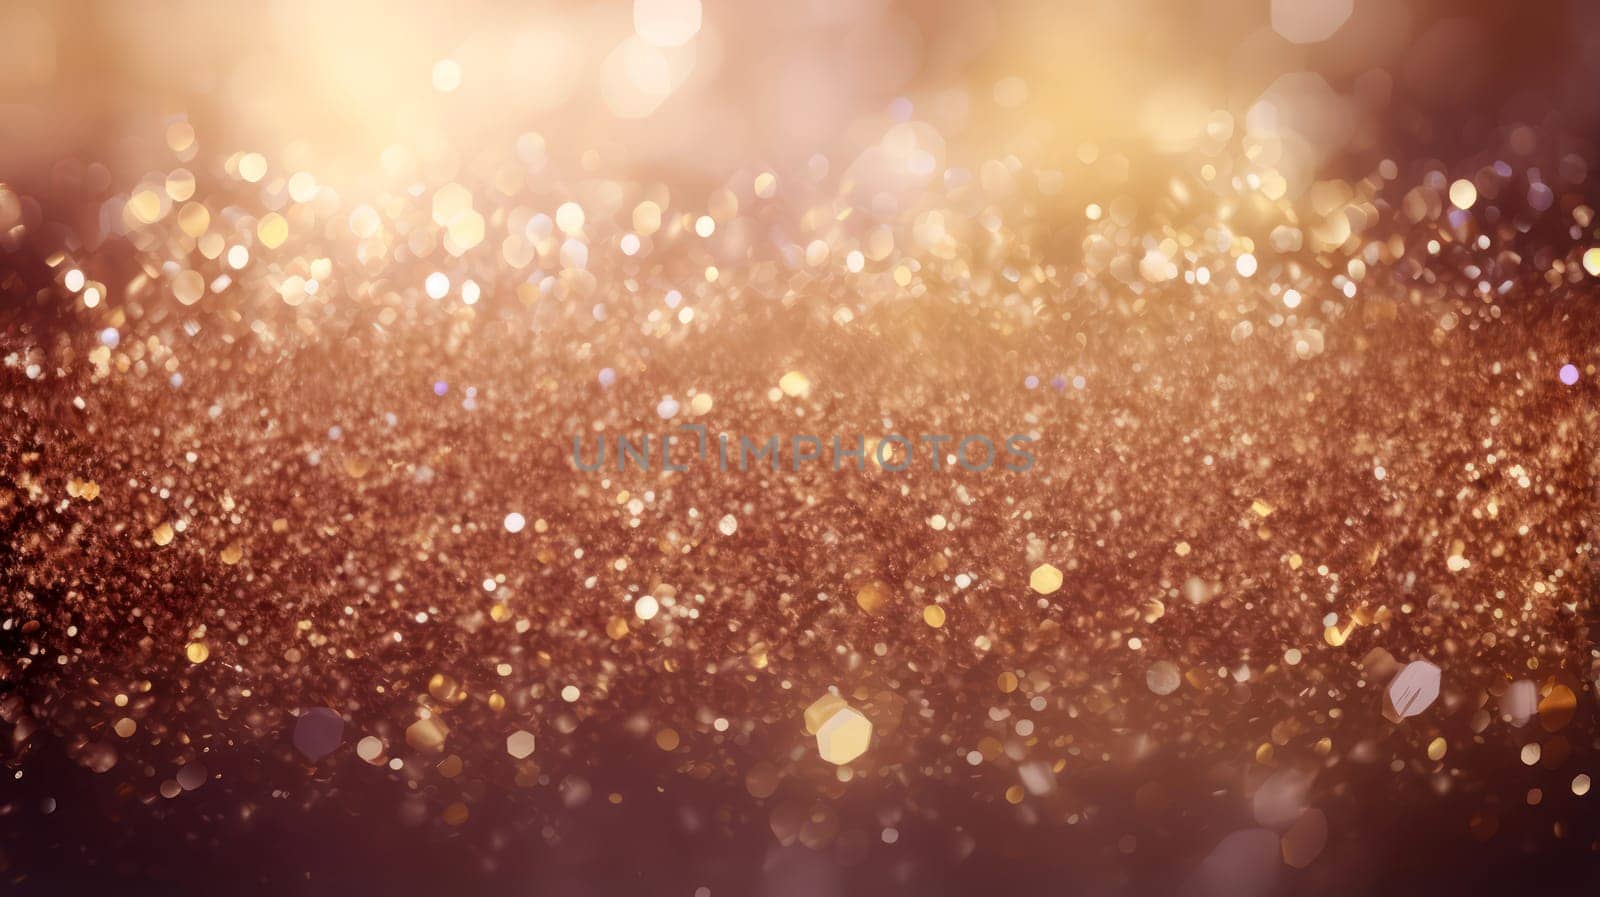 Warm golden bokeh lights creating a festive, glittery background texture